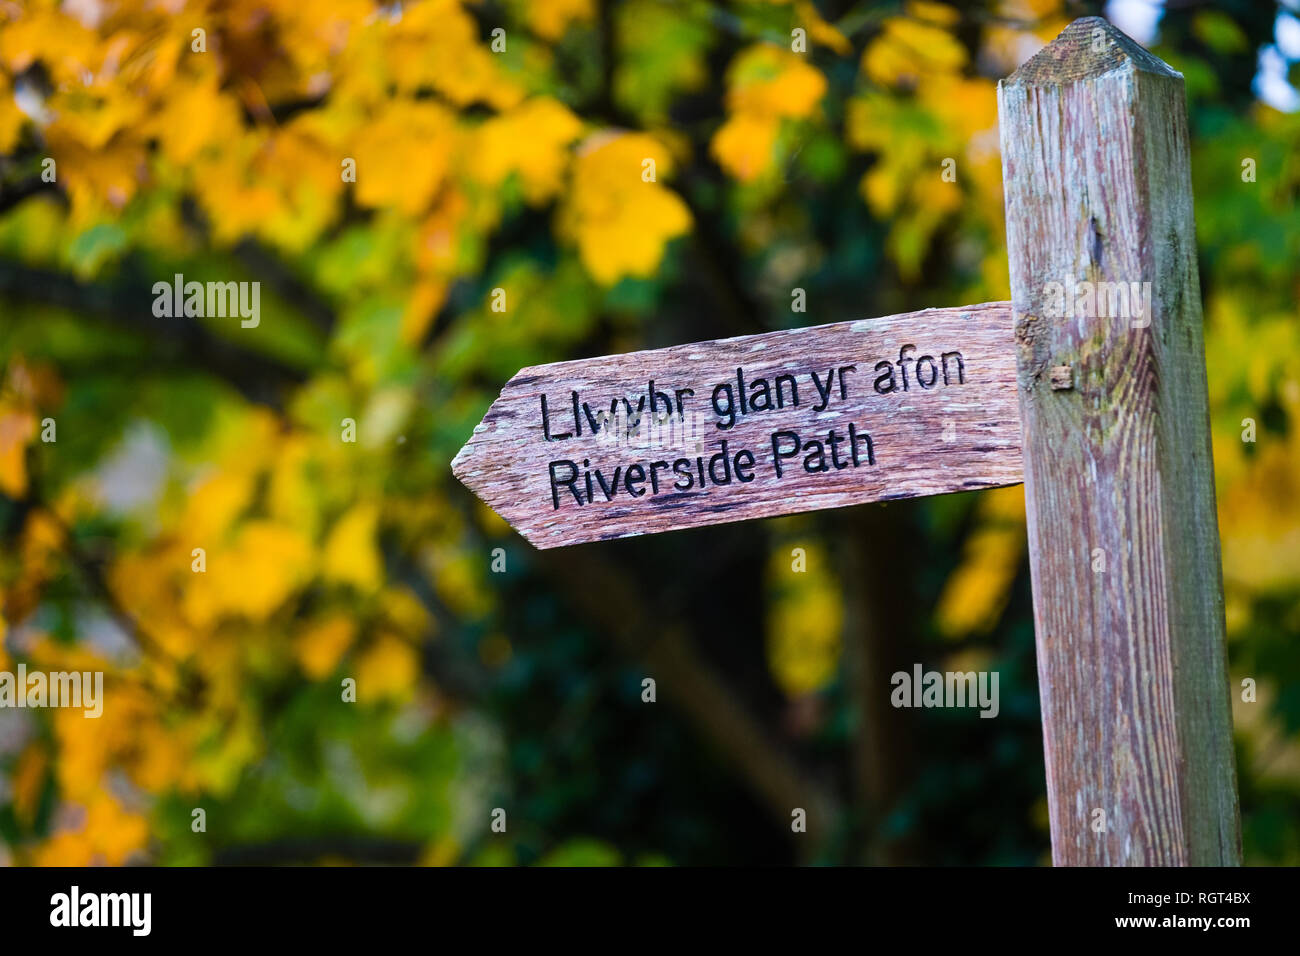 Une ancienne weatheredwooden fabricants post avec des mots anglais et gallois bilingue pour Llwybr Glan yr Afon / chemin Riverside, avec les feuilles d'automne dans l'arrière-plan. Pays de Galles UK Banque D'Images